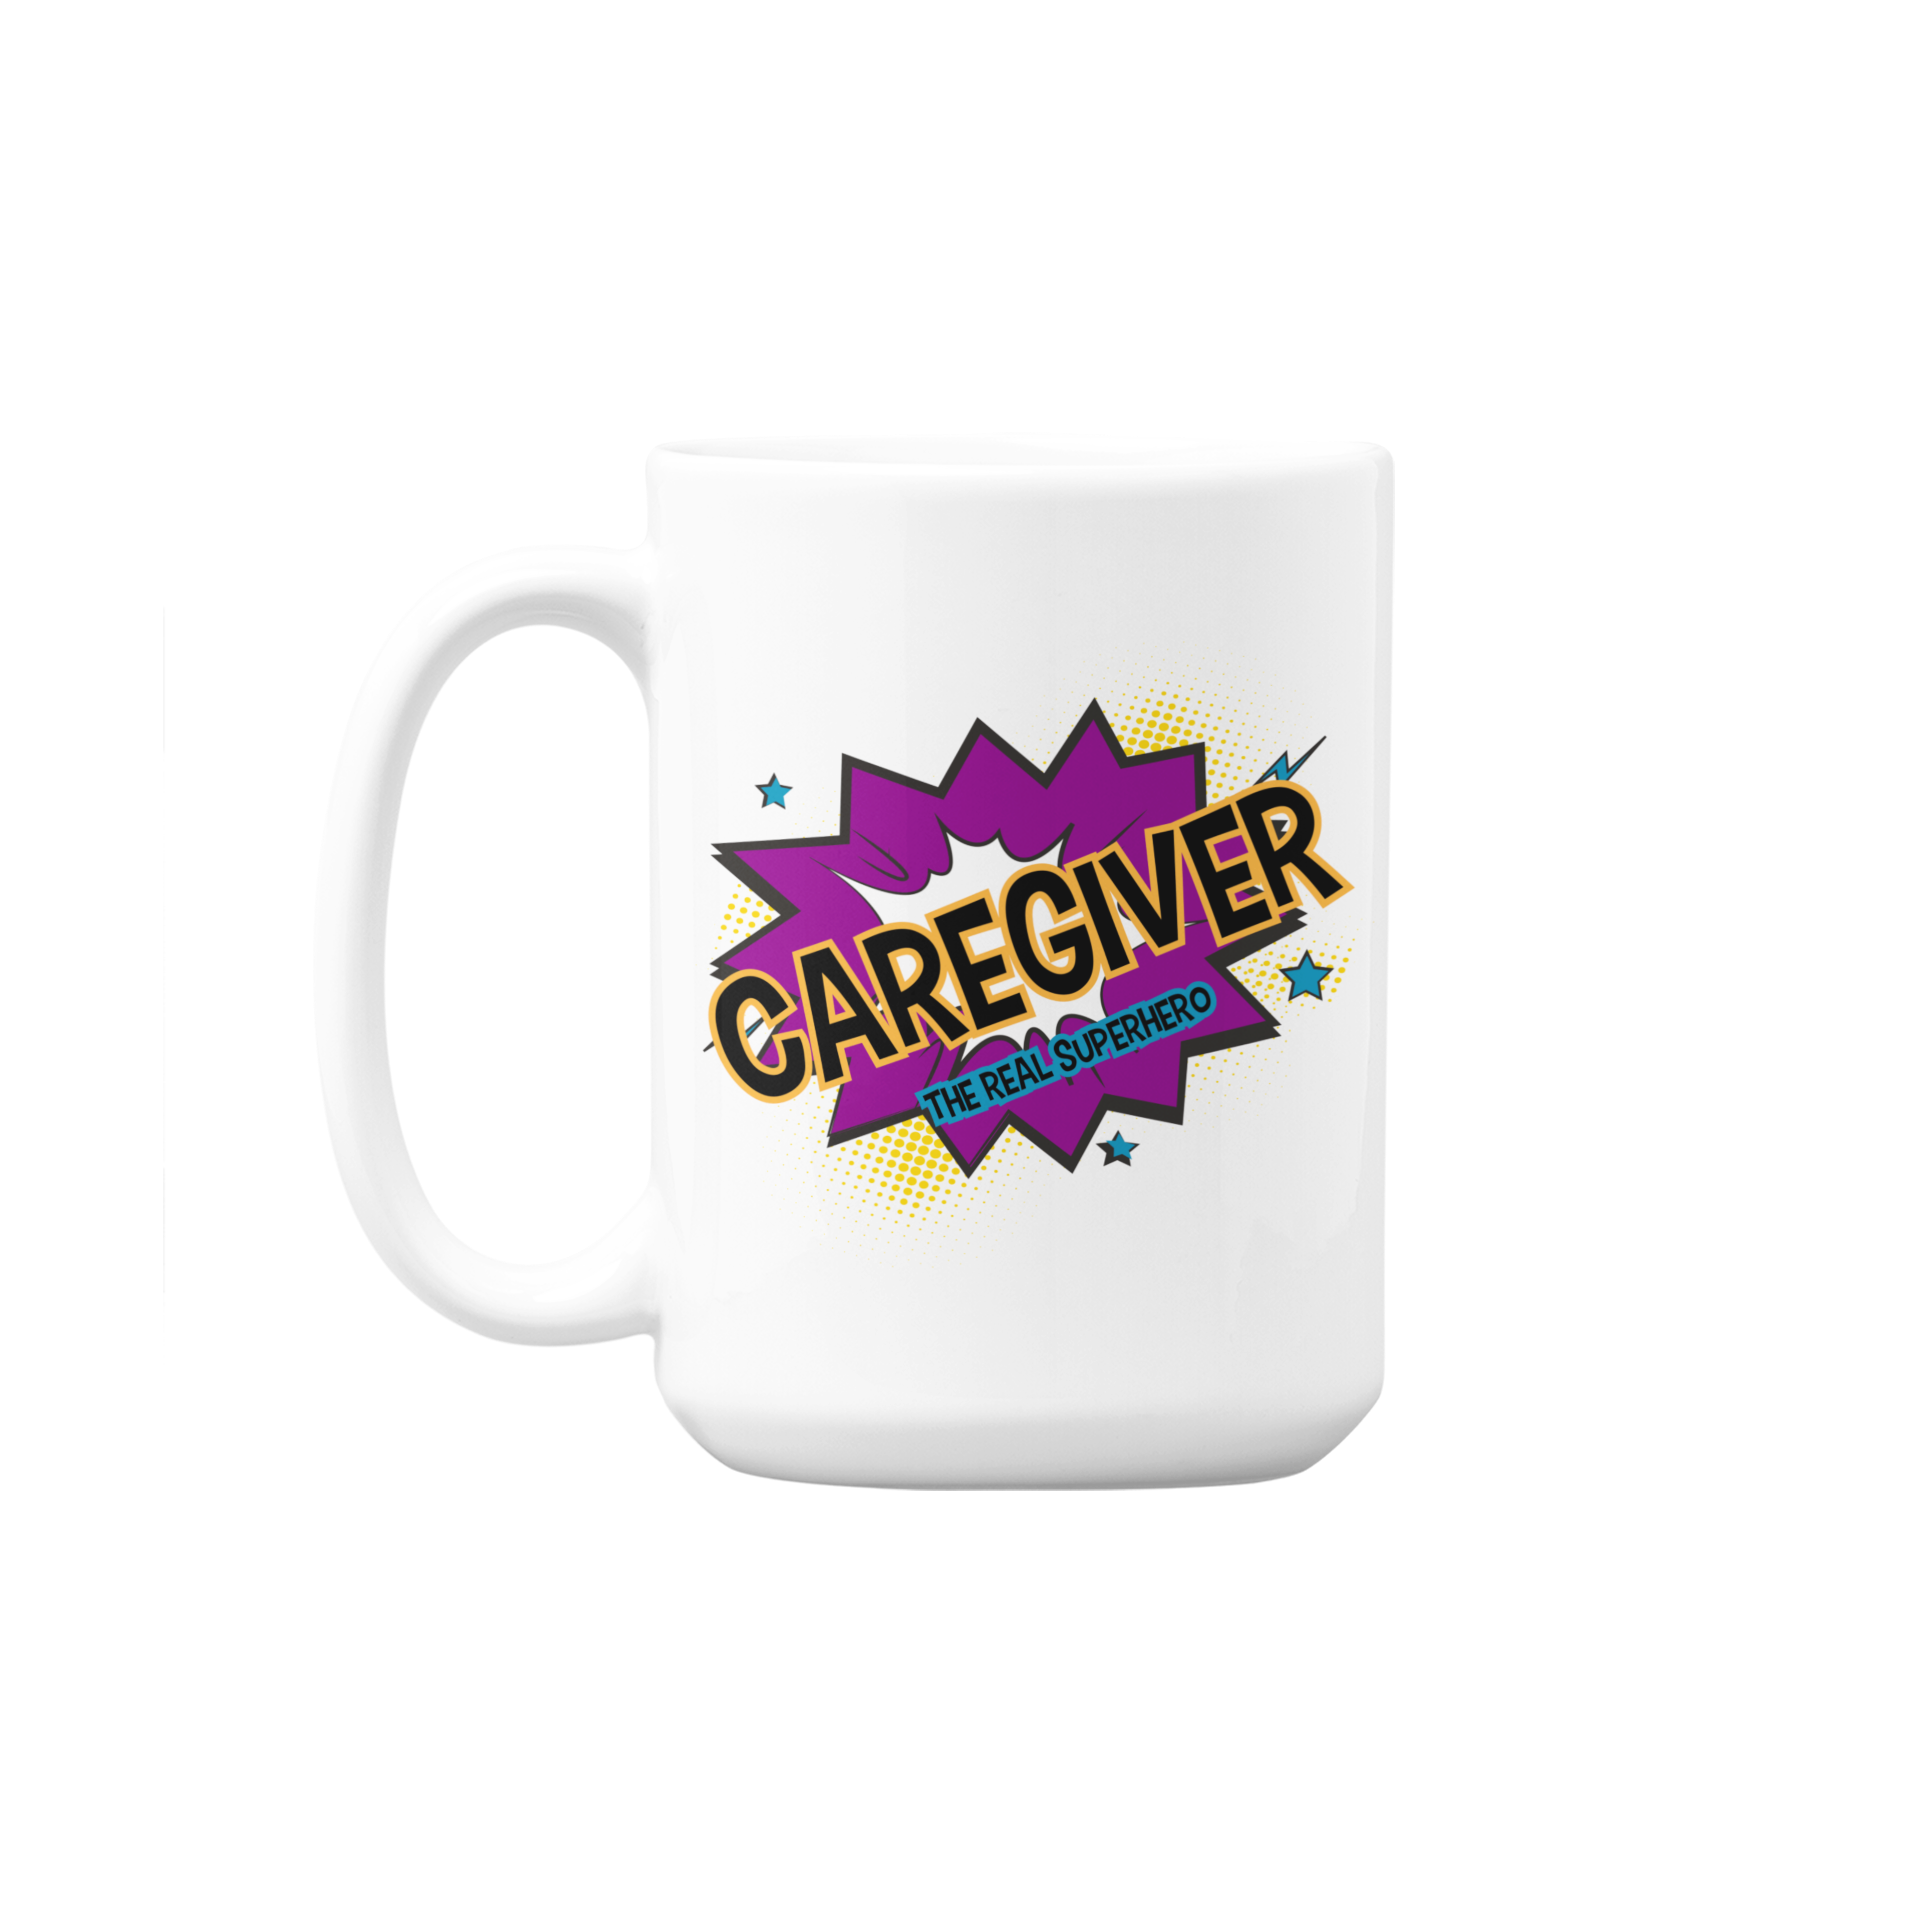 Caregiver Superhero Mug